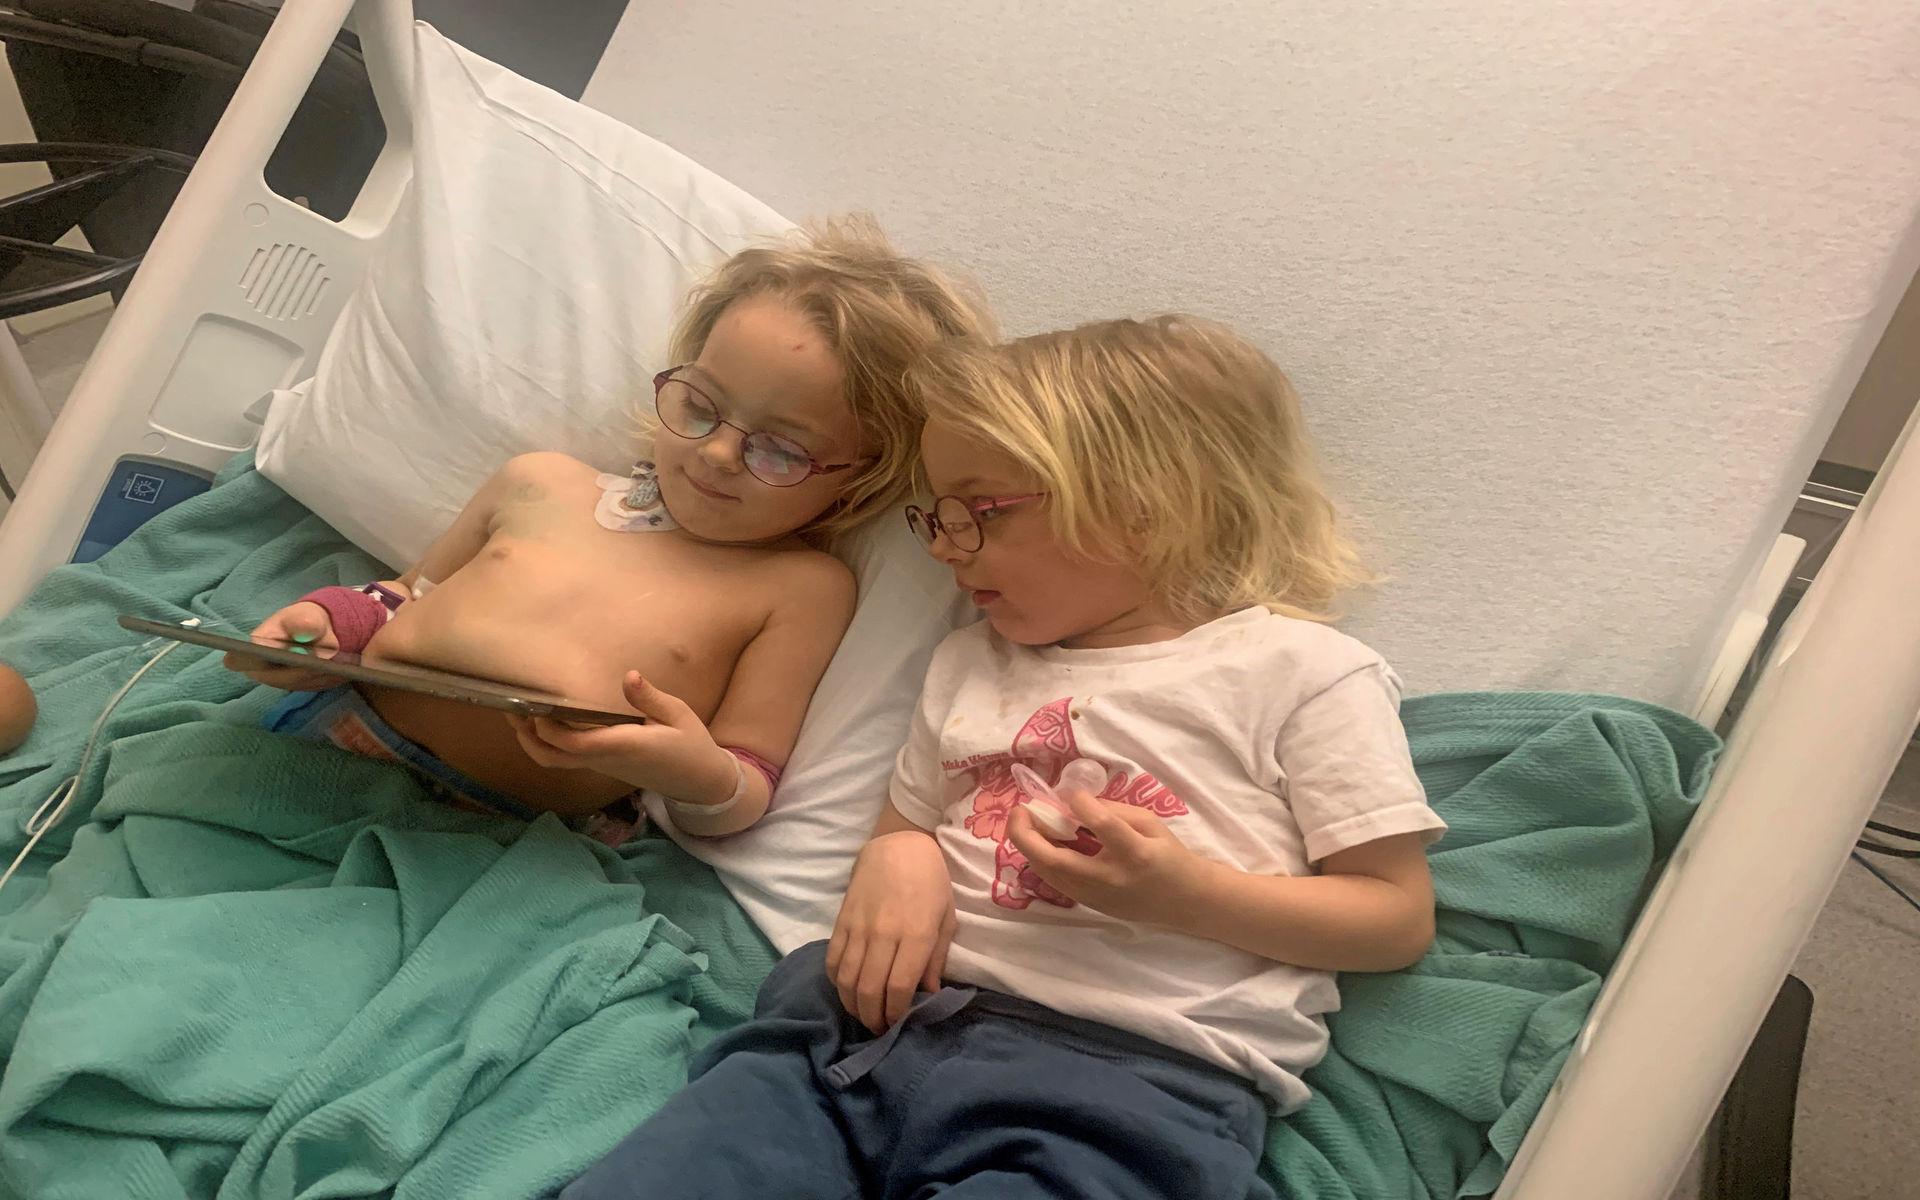 April 2020 - enäggstvillingarnar Julia och Isabella tittar på Ipad tillsammans inne på sjukhusrummet på National Institutes of Health. 